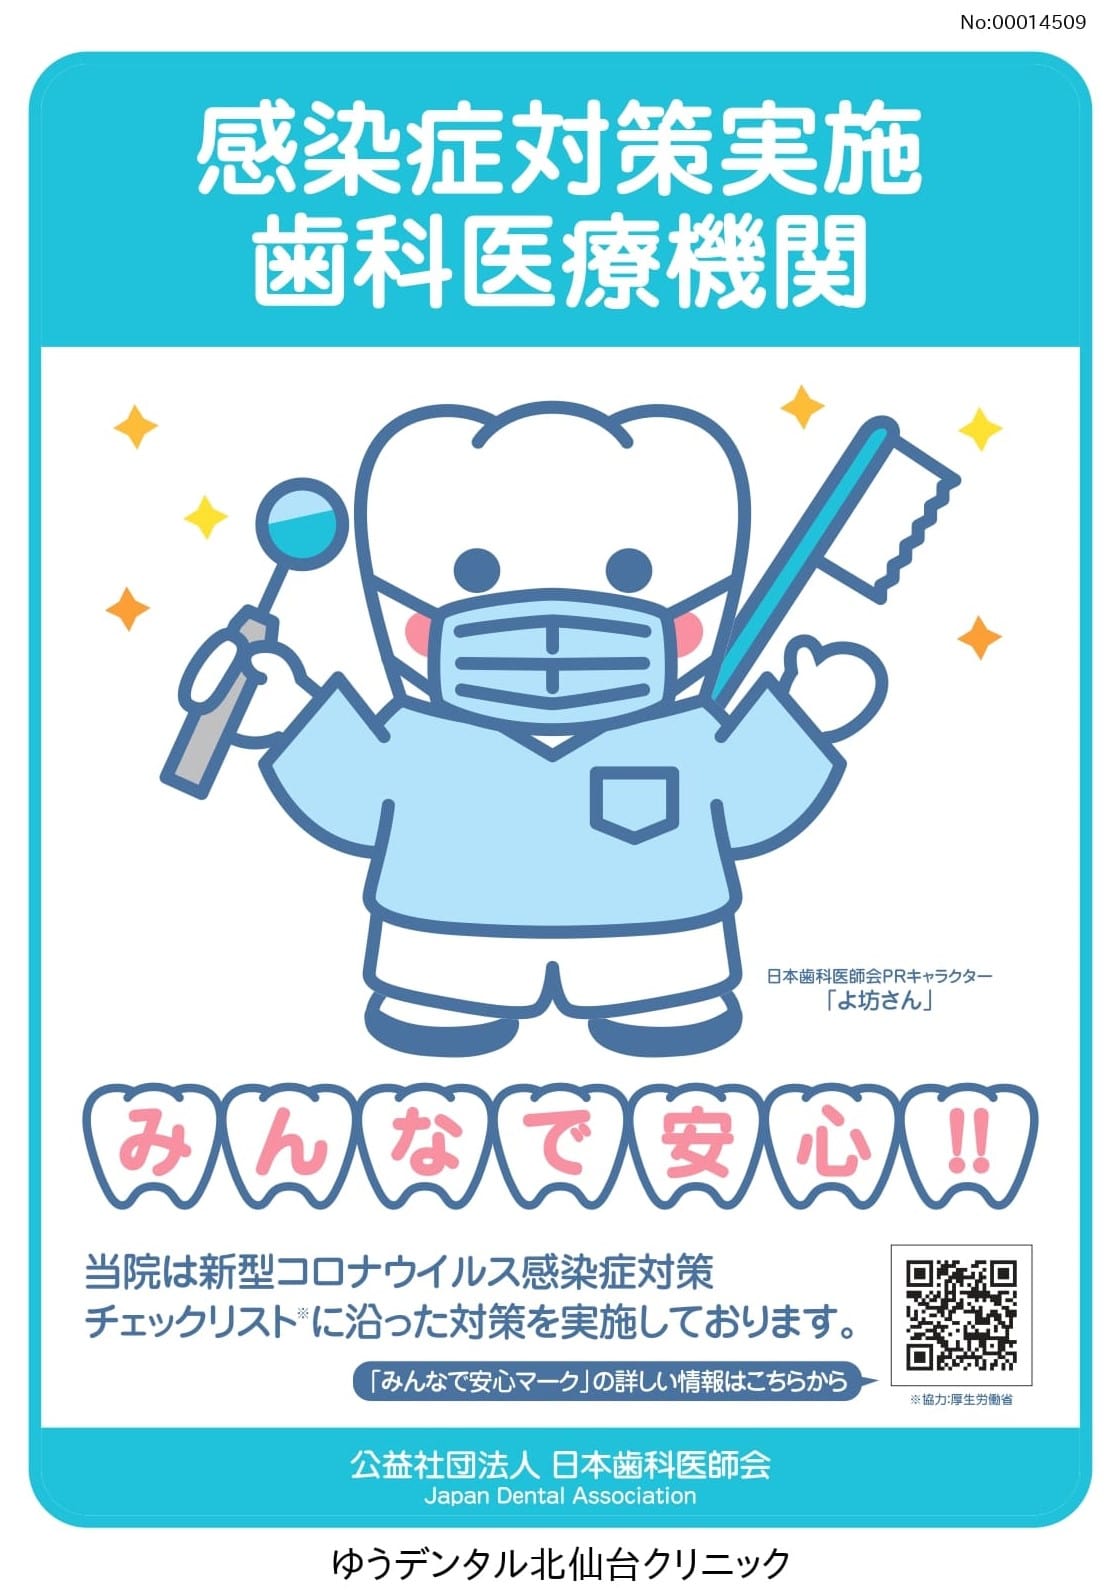 日本歯科医師会感染症対策実施歯科医療機関画像